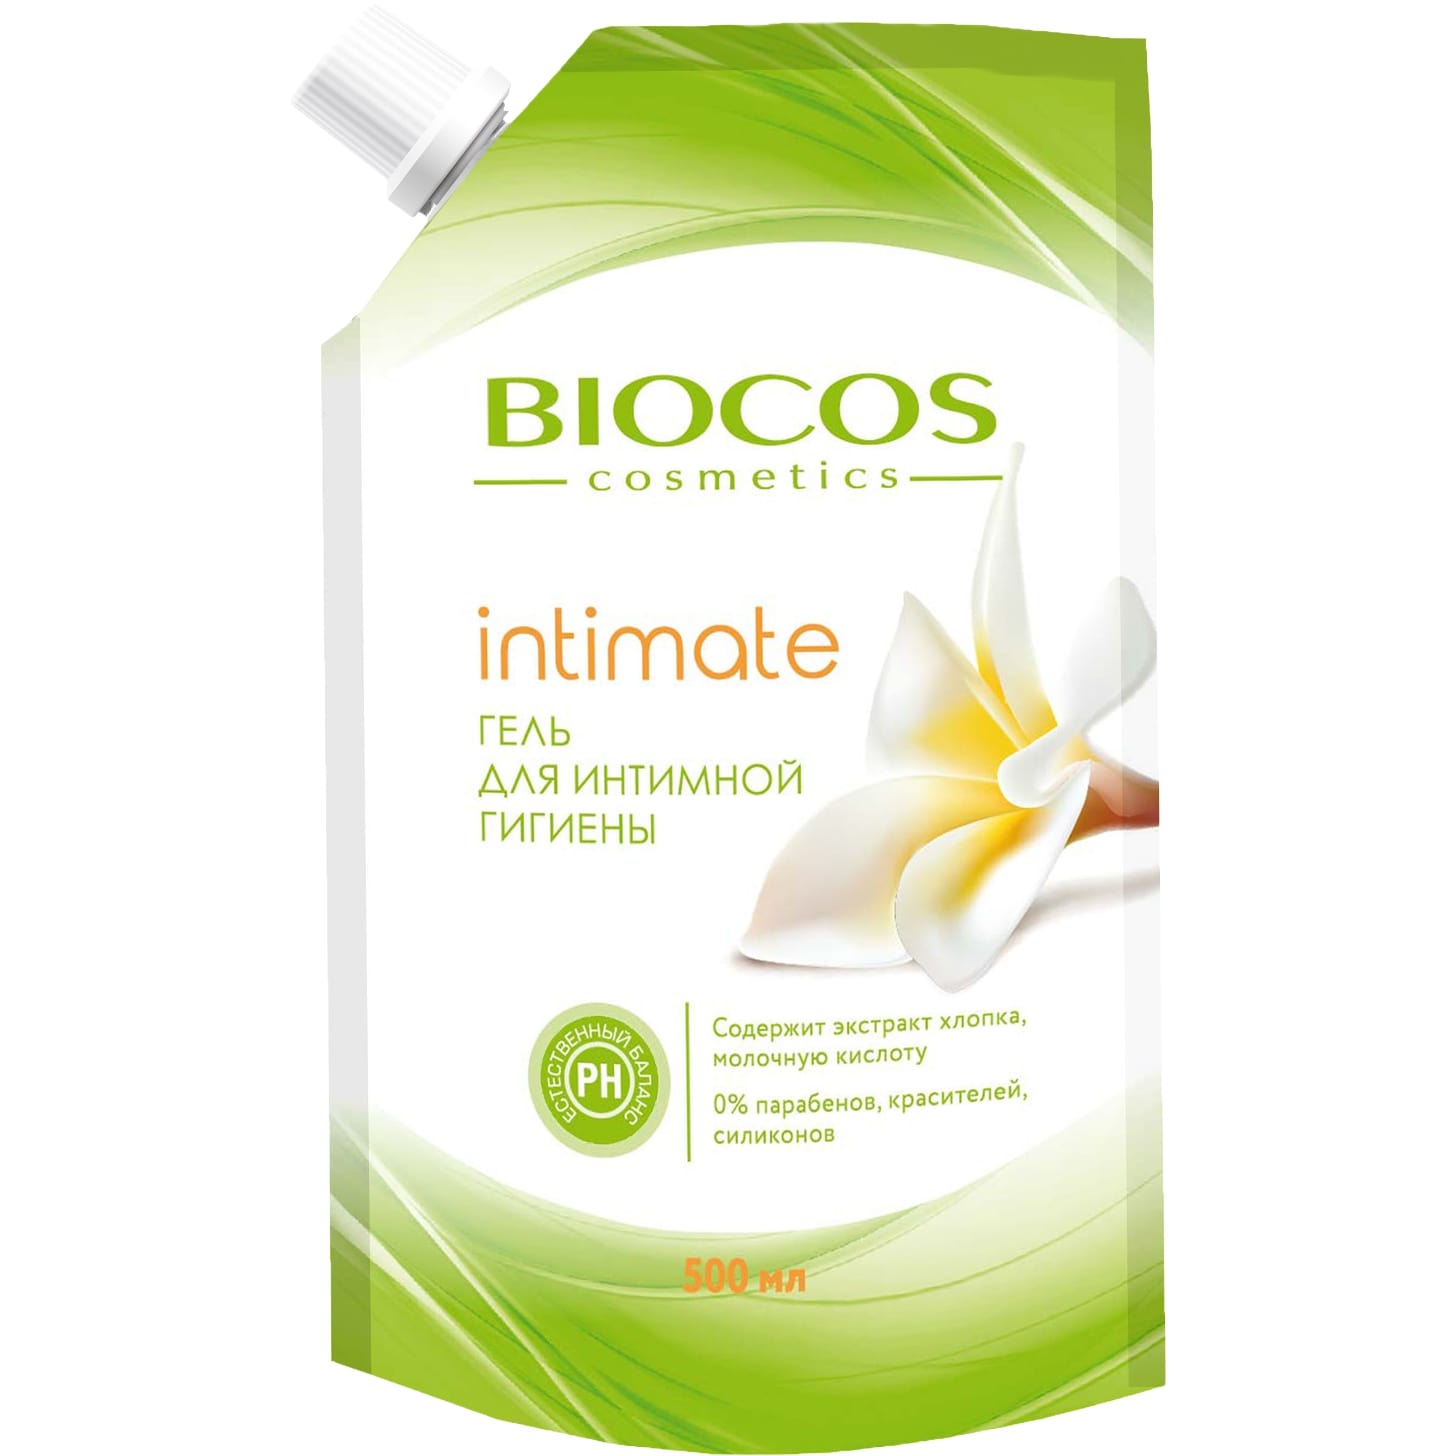 Гель для интимной гигиены BioCos intimate с экстрактом хлопка и молочной кислотой 500 мл zoovip гель согревающий с экстрактом перца и прополисом 500 мл